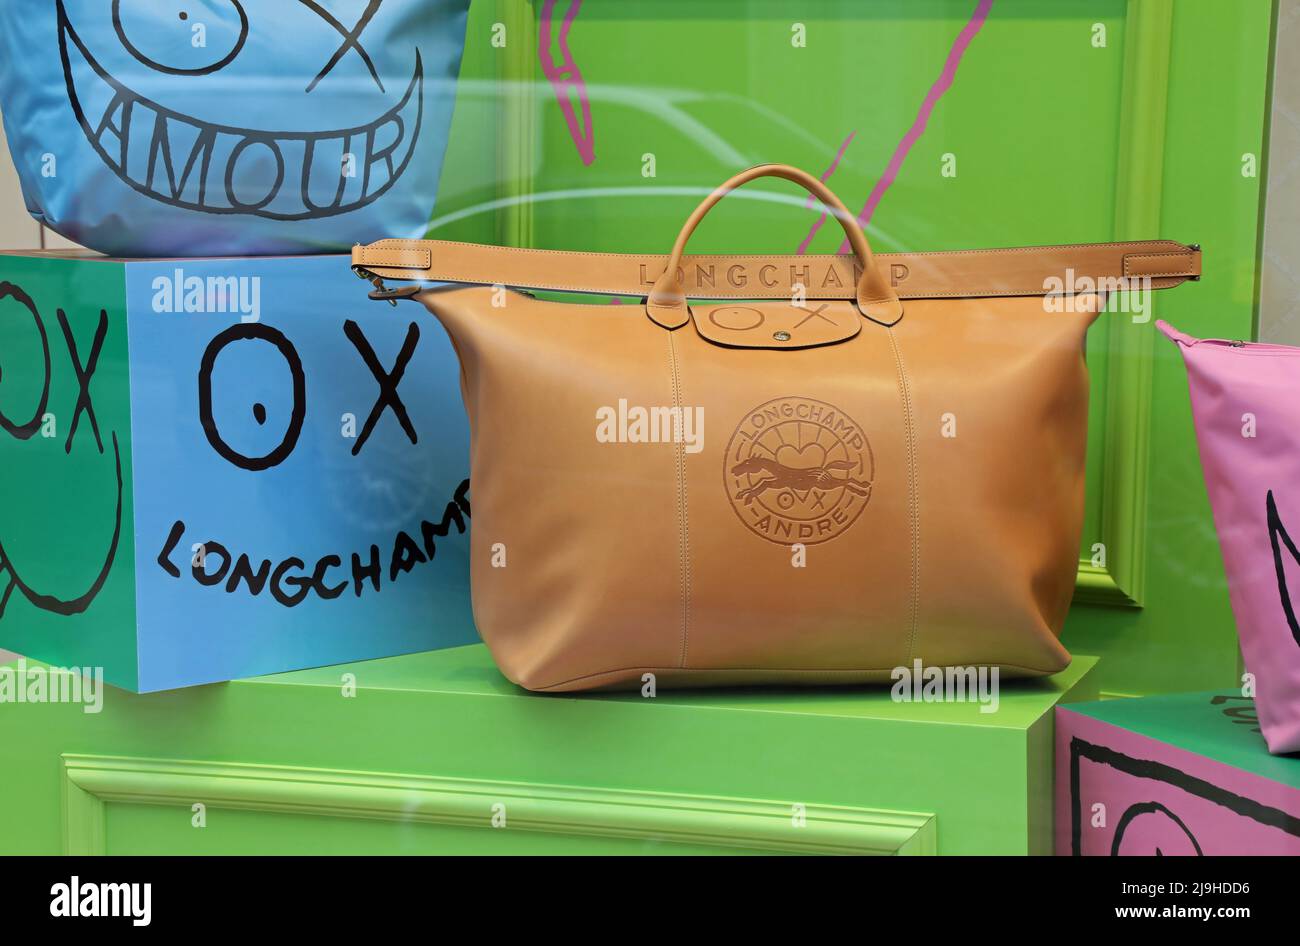 Longchamp shop -Fotos und -Bildmaterial in hoher Auflösung – Alamy